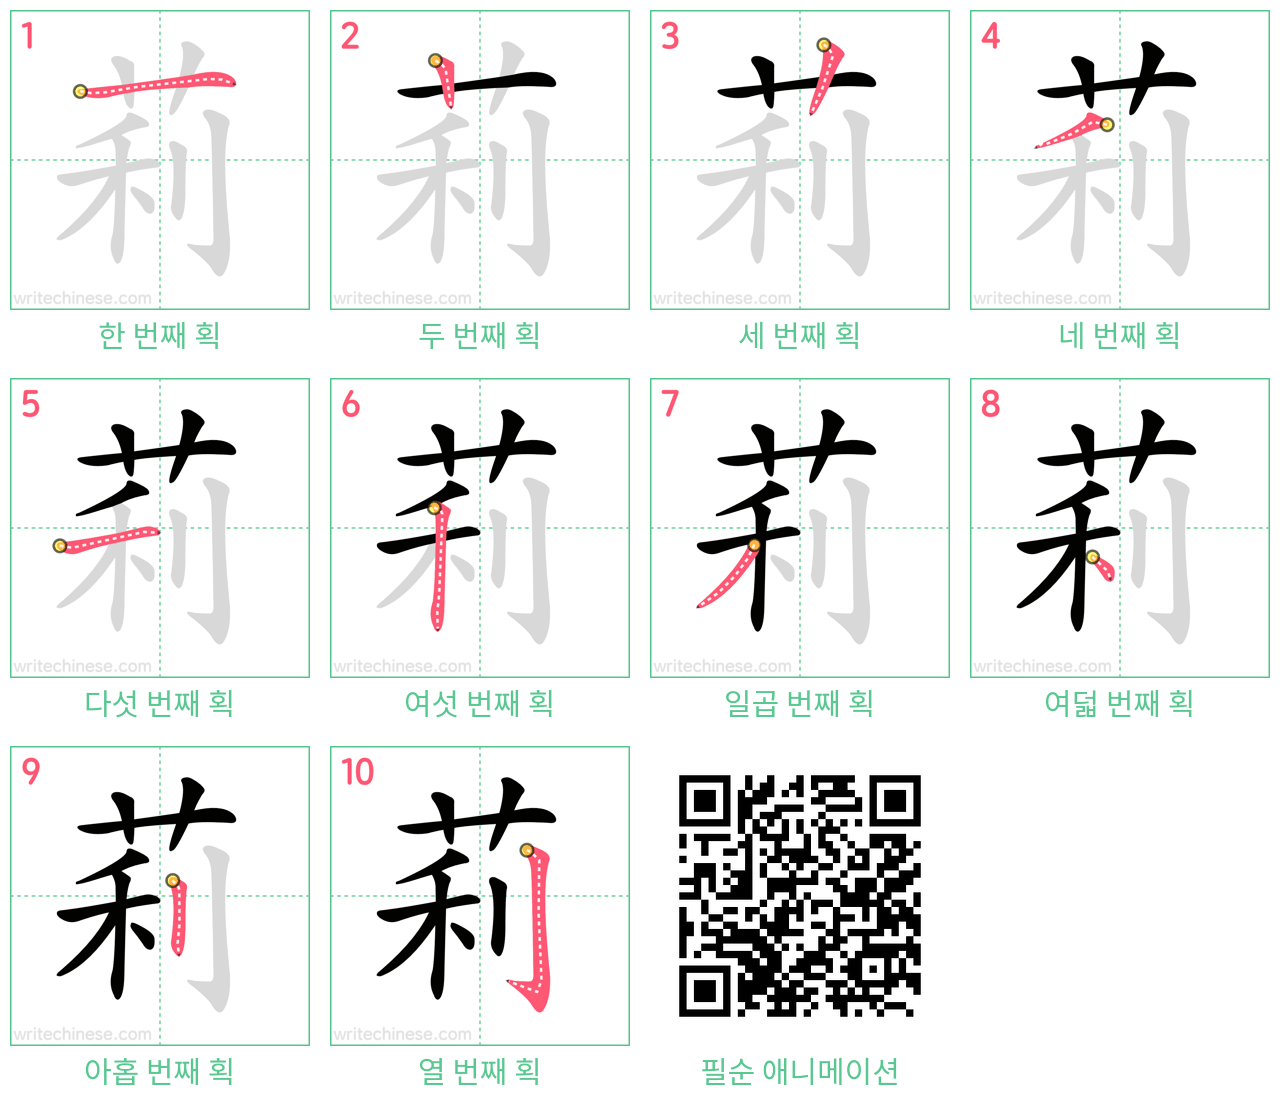 莉 step-by-step stroke order diagrams